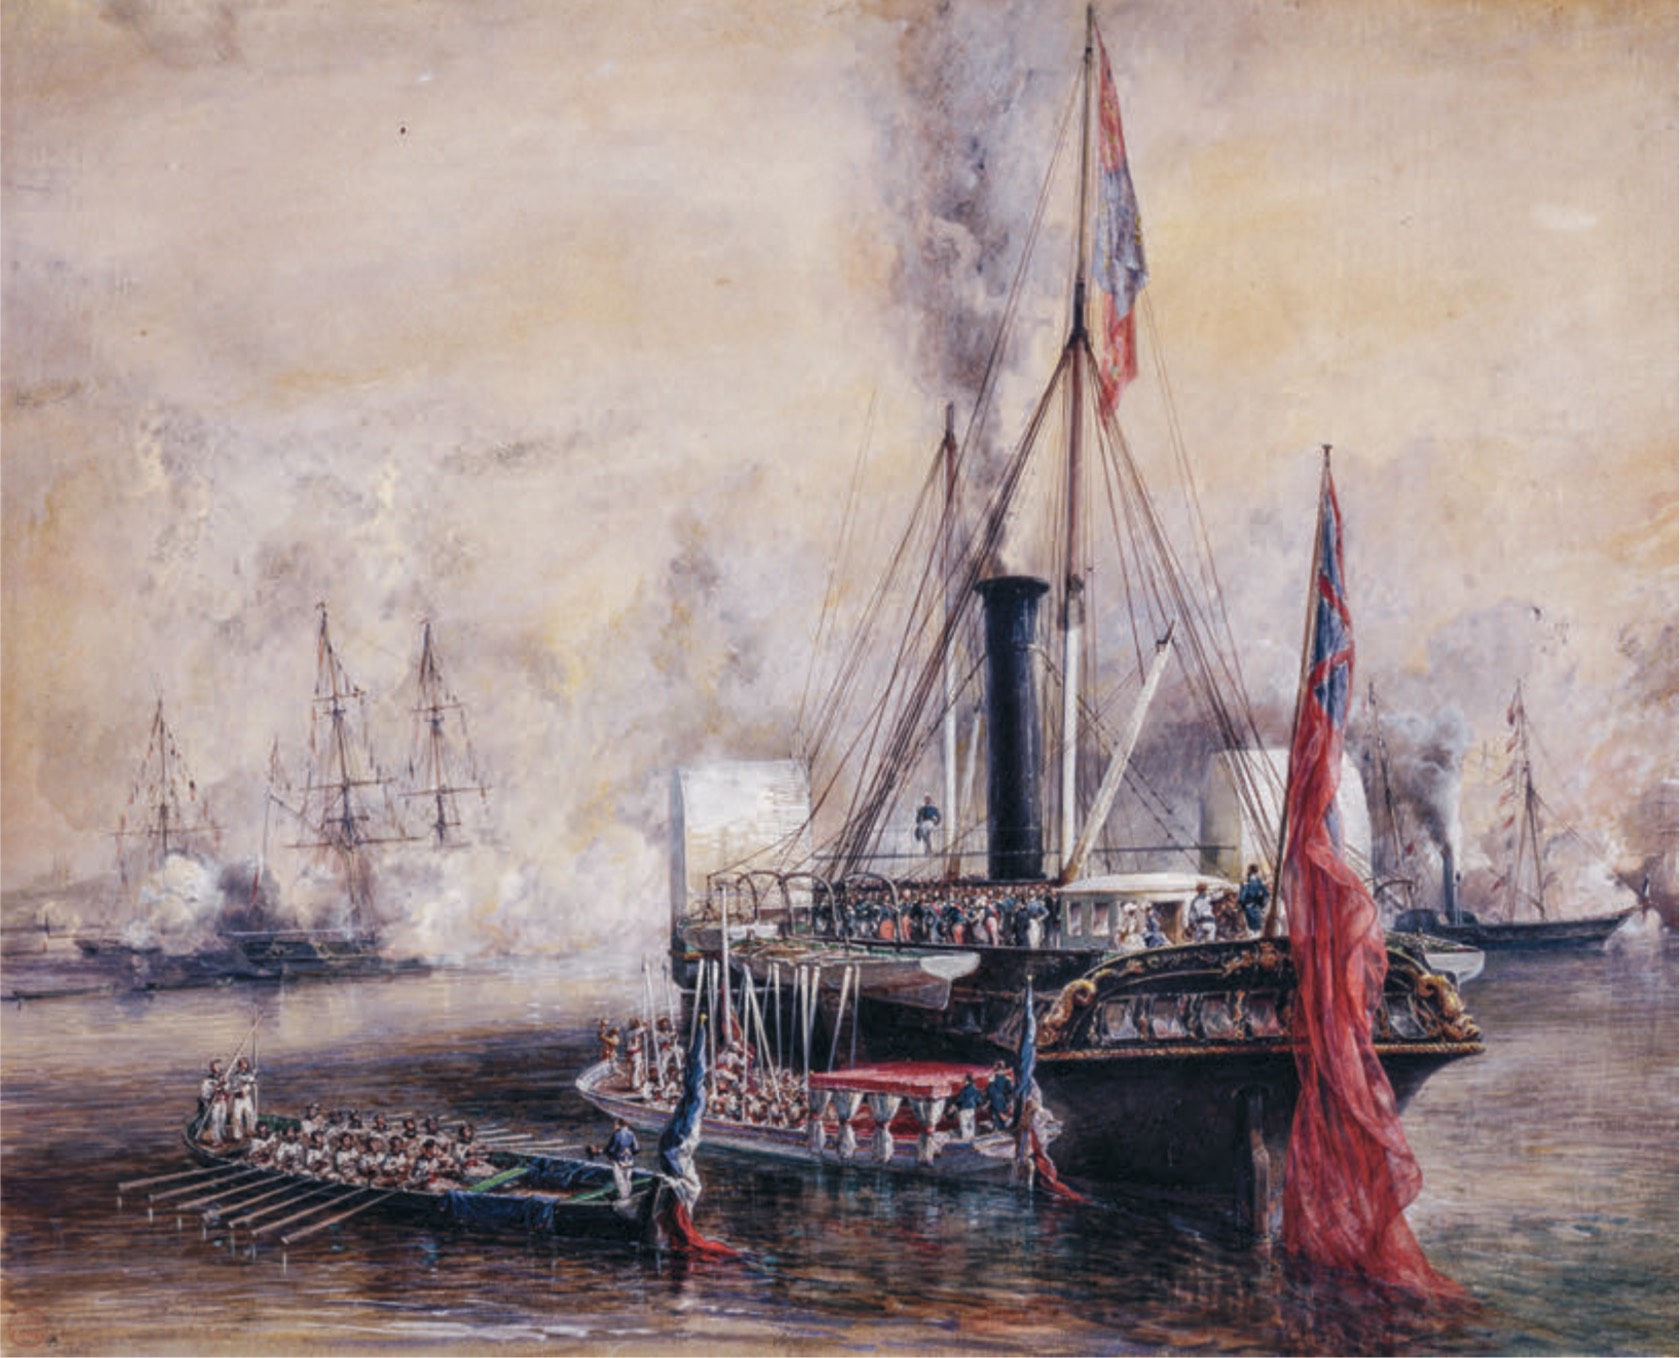 Eugène Isabey, La reine Victoria reçoit Louis-Philippe à bord de son yacht royal au Tréport (1843)